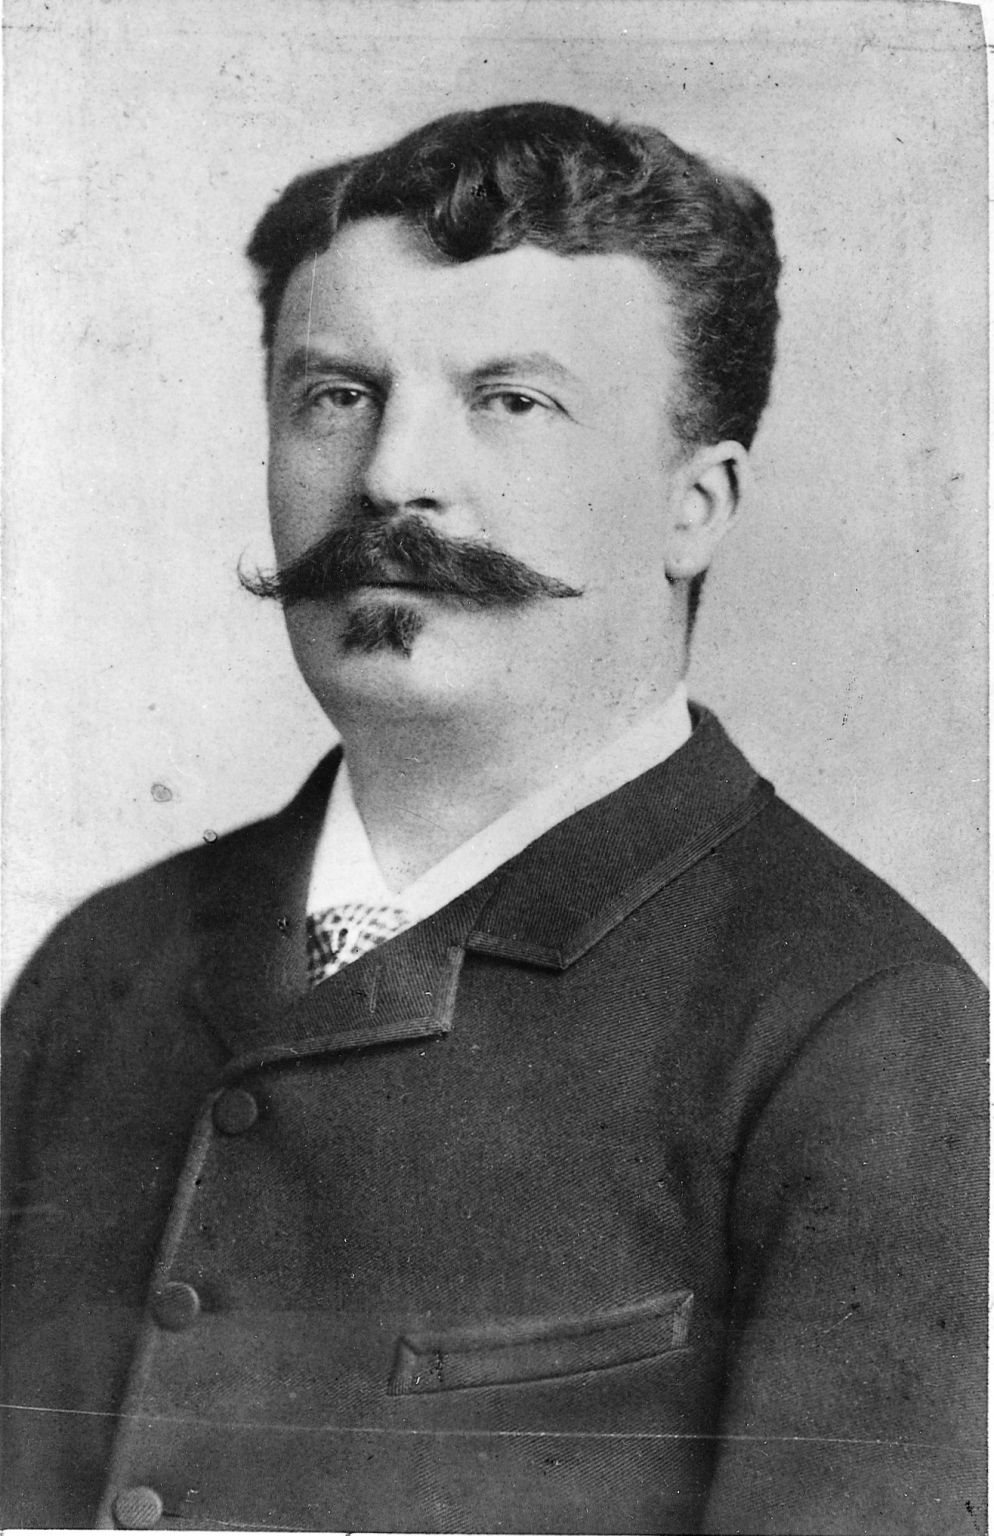 photographie de Guy de Maupassant, écrivain français (1850-1893)